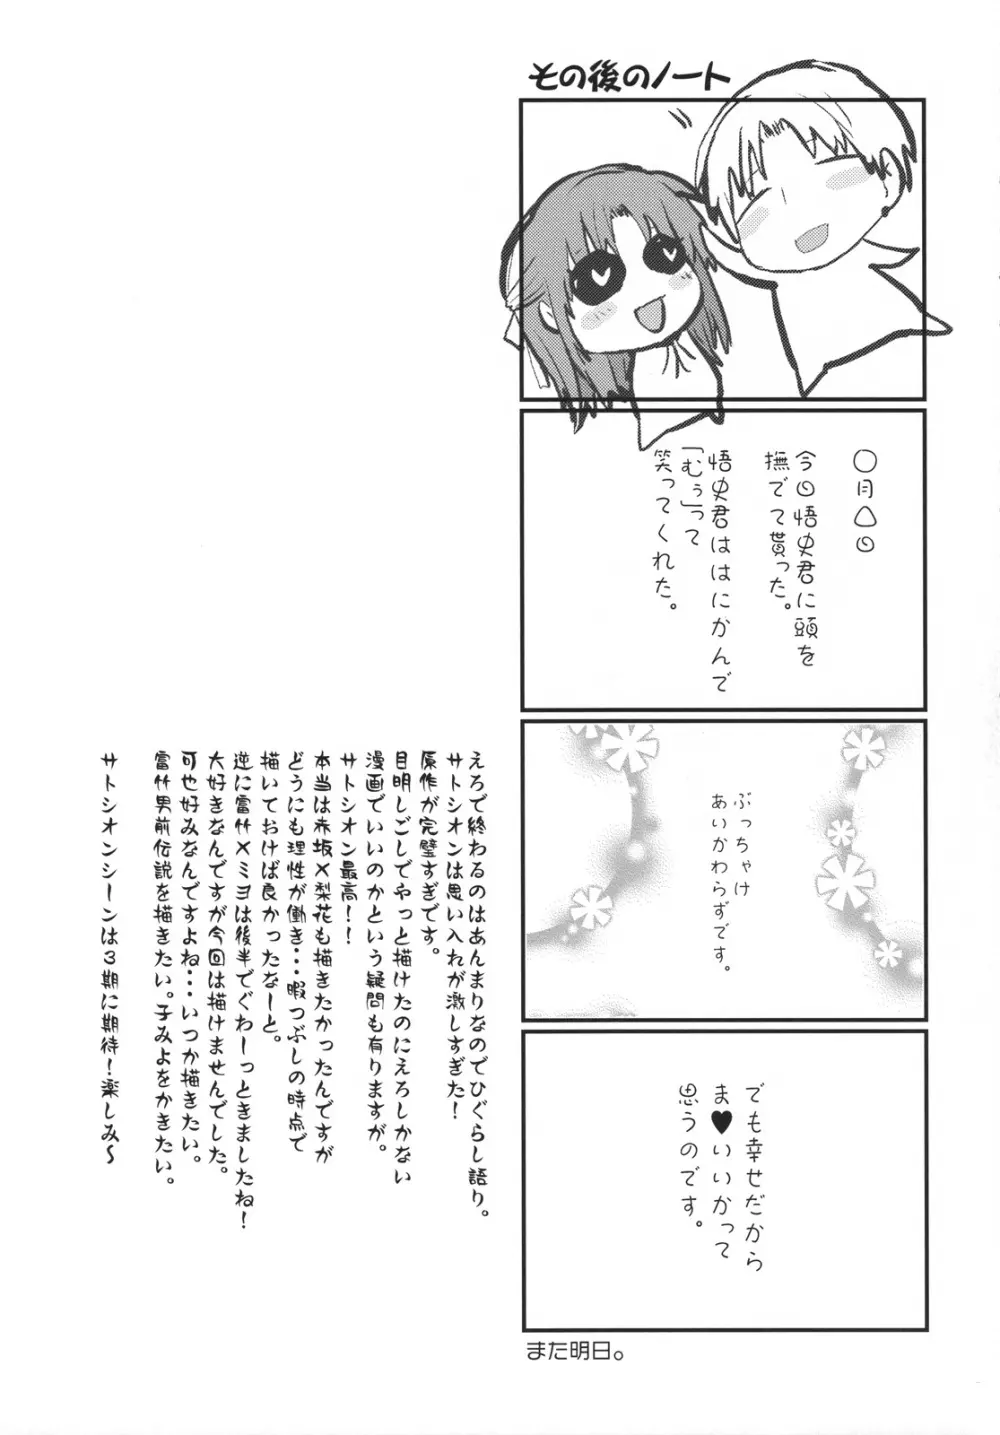 Umineko sono higurashi 28ページ